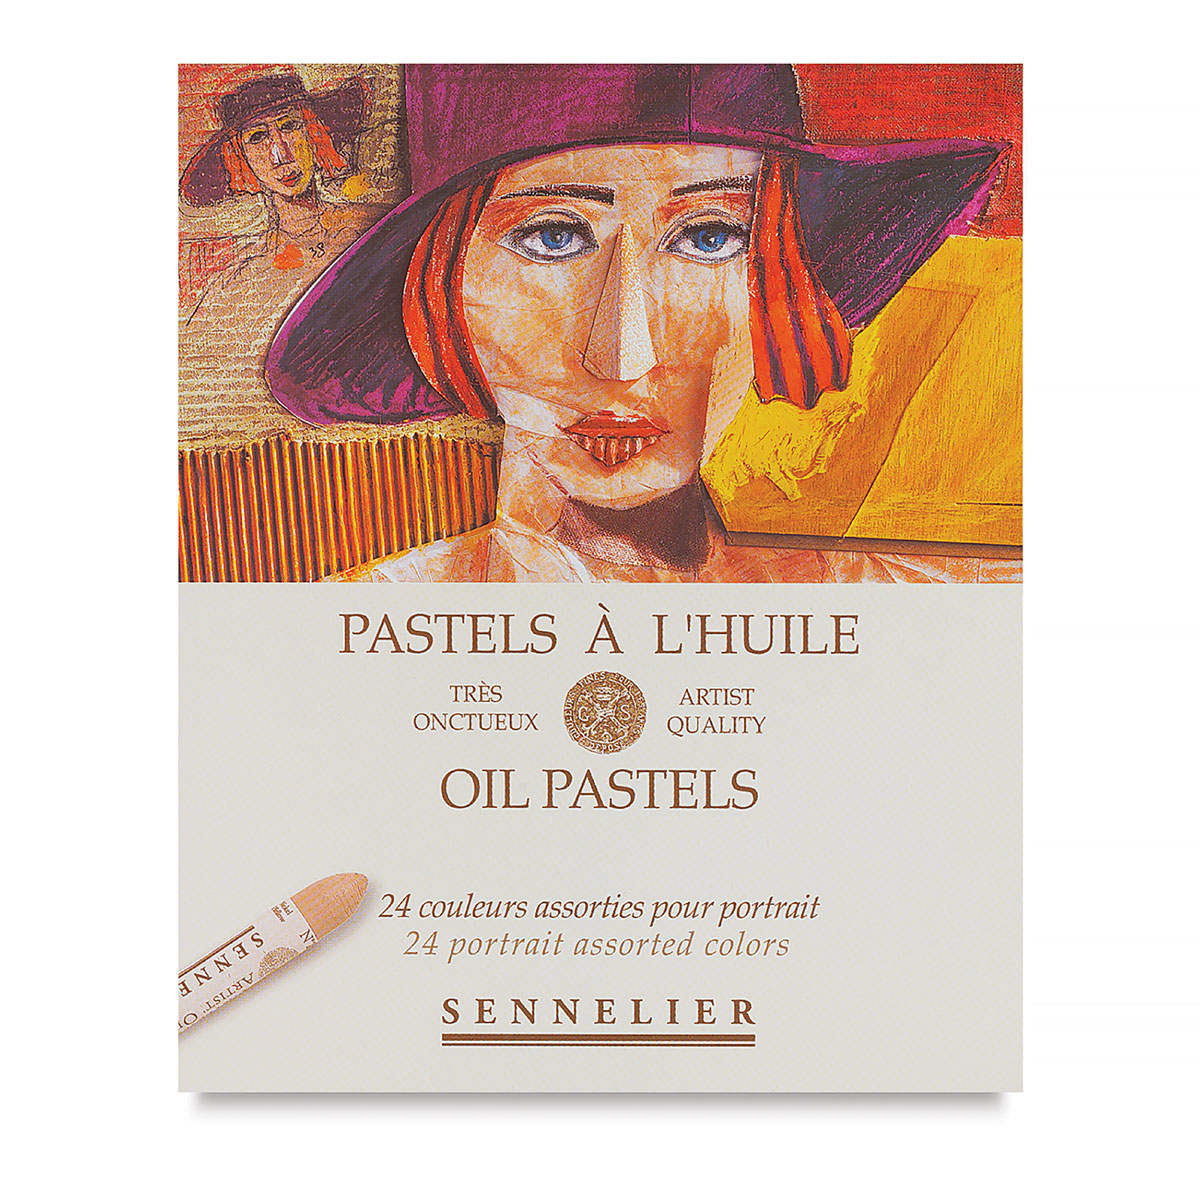 Oil Pastels: Sennelier Oil Pastels (review)